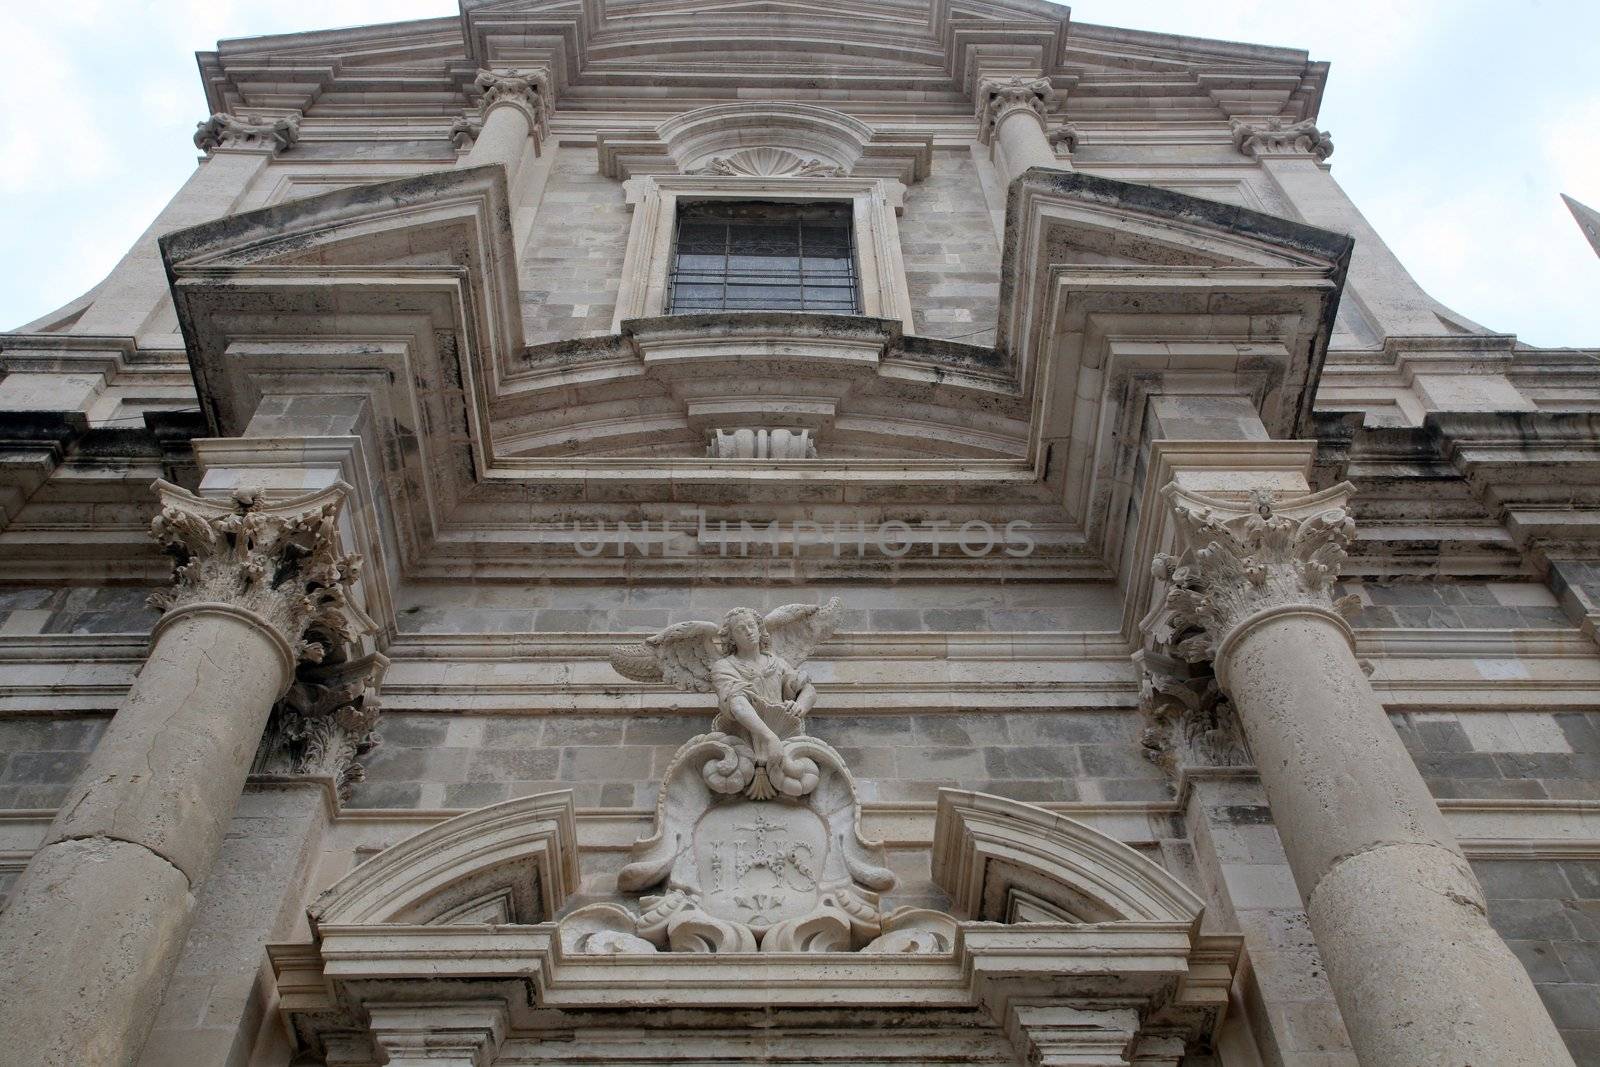 Portal of the church of Saint Ignatius in Dubrovnik